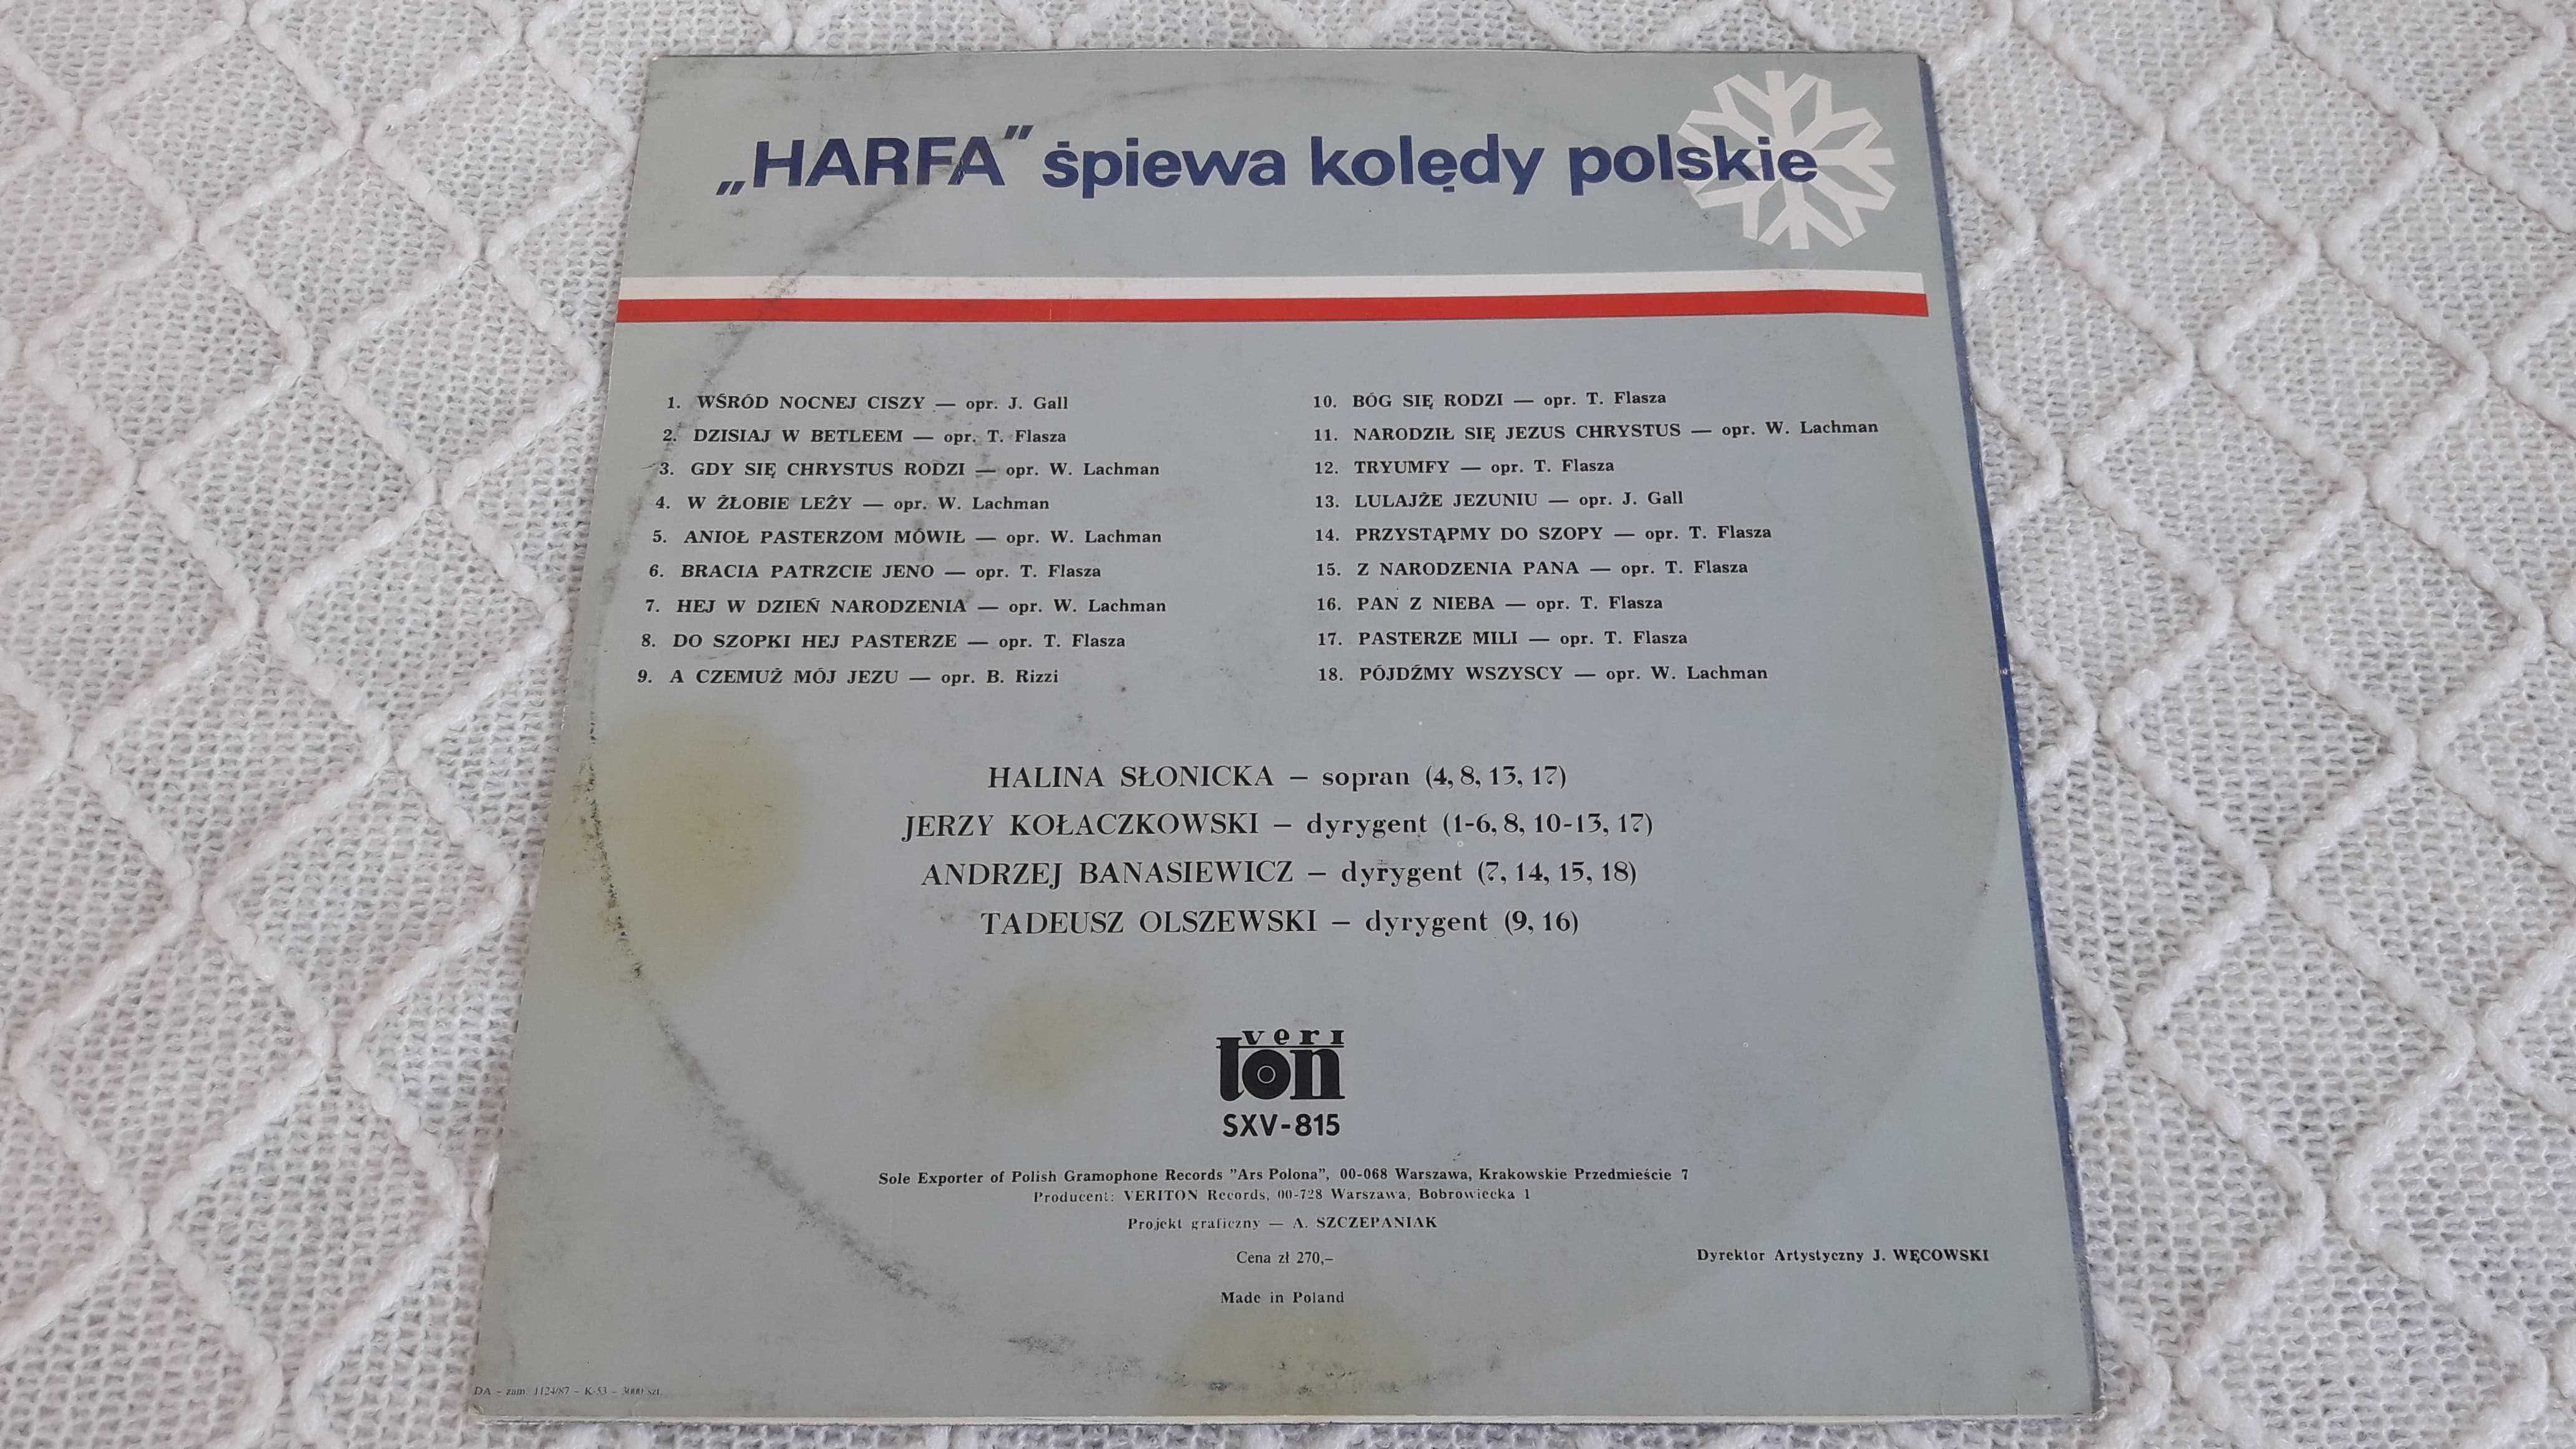 Płyta winylowa "Harfa" śpiewa kolędy polskie"